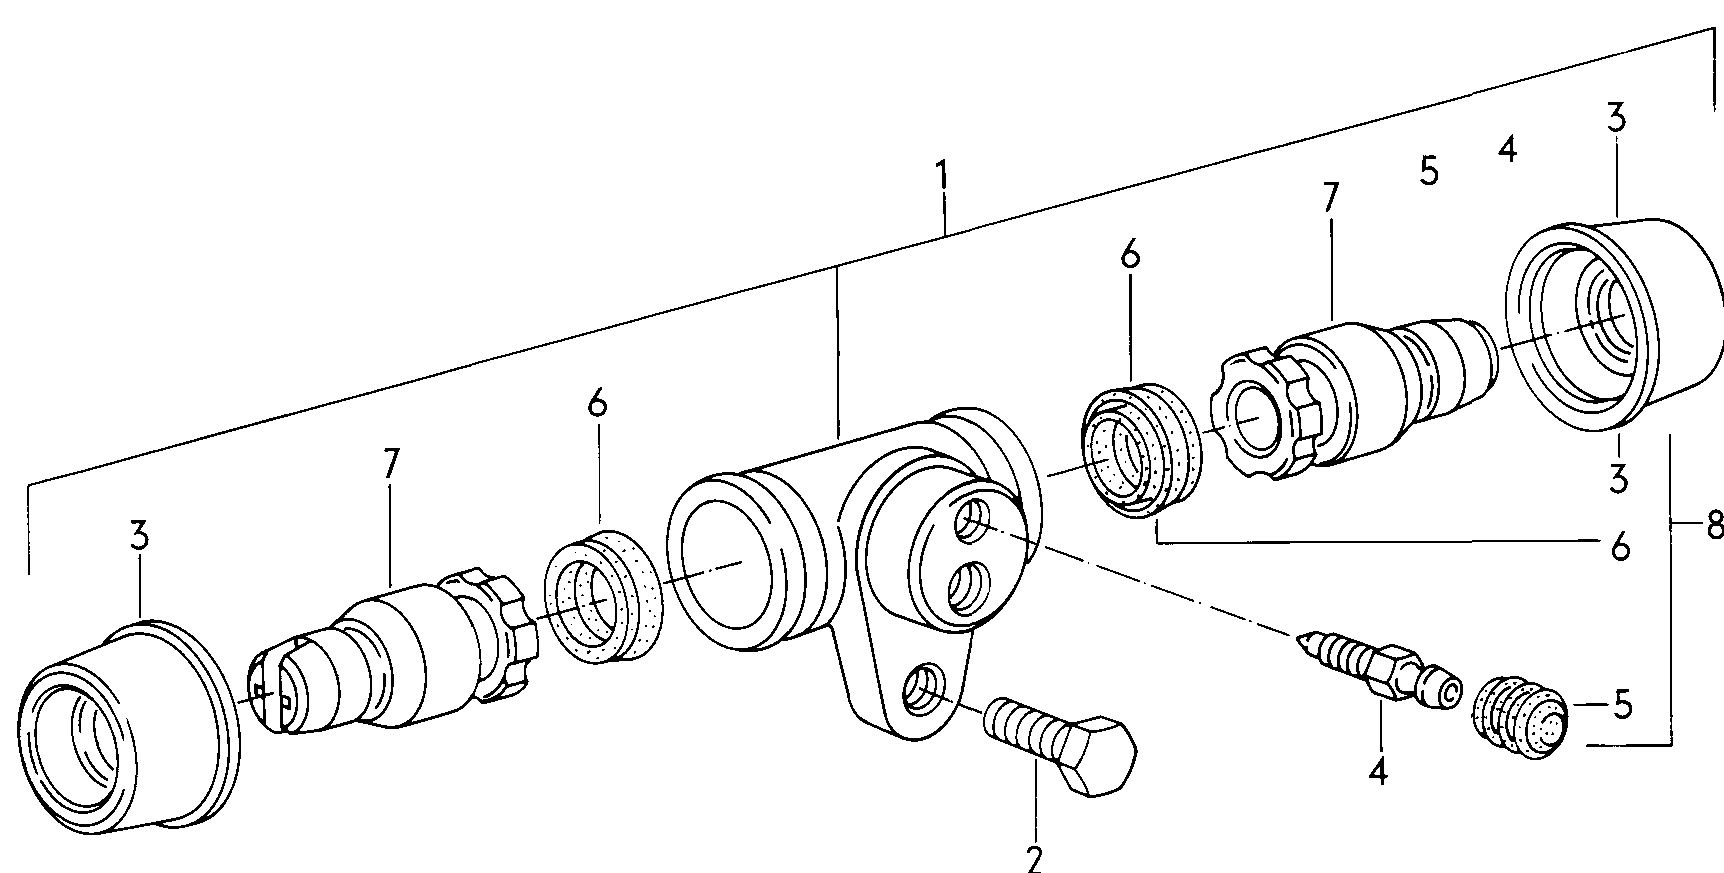 cilindro freno rueda trasero - Typ 2/syncro - t2